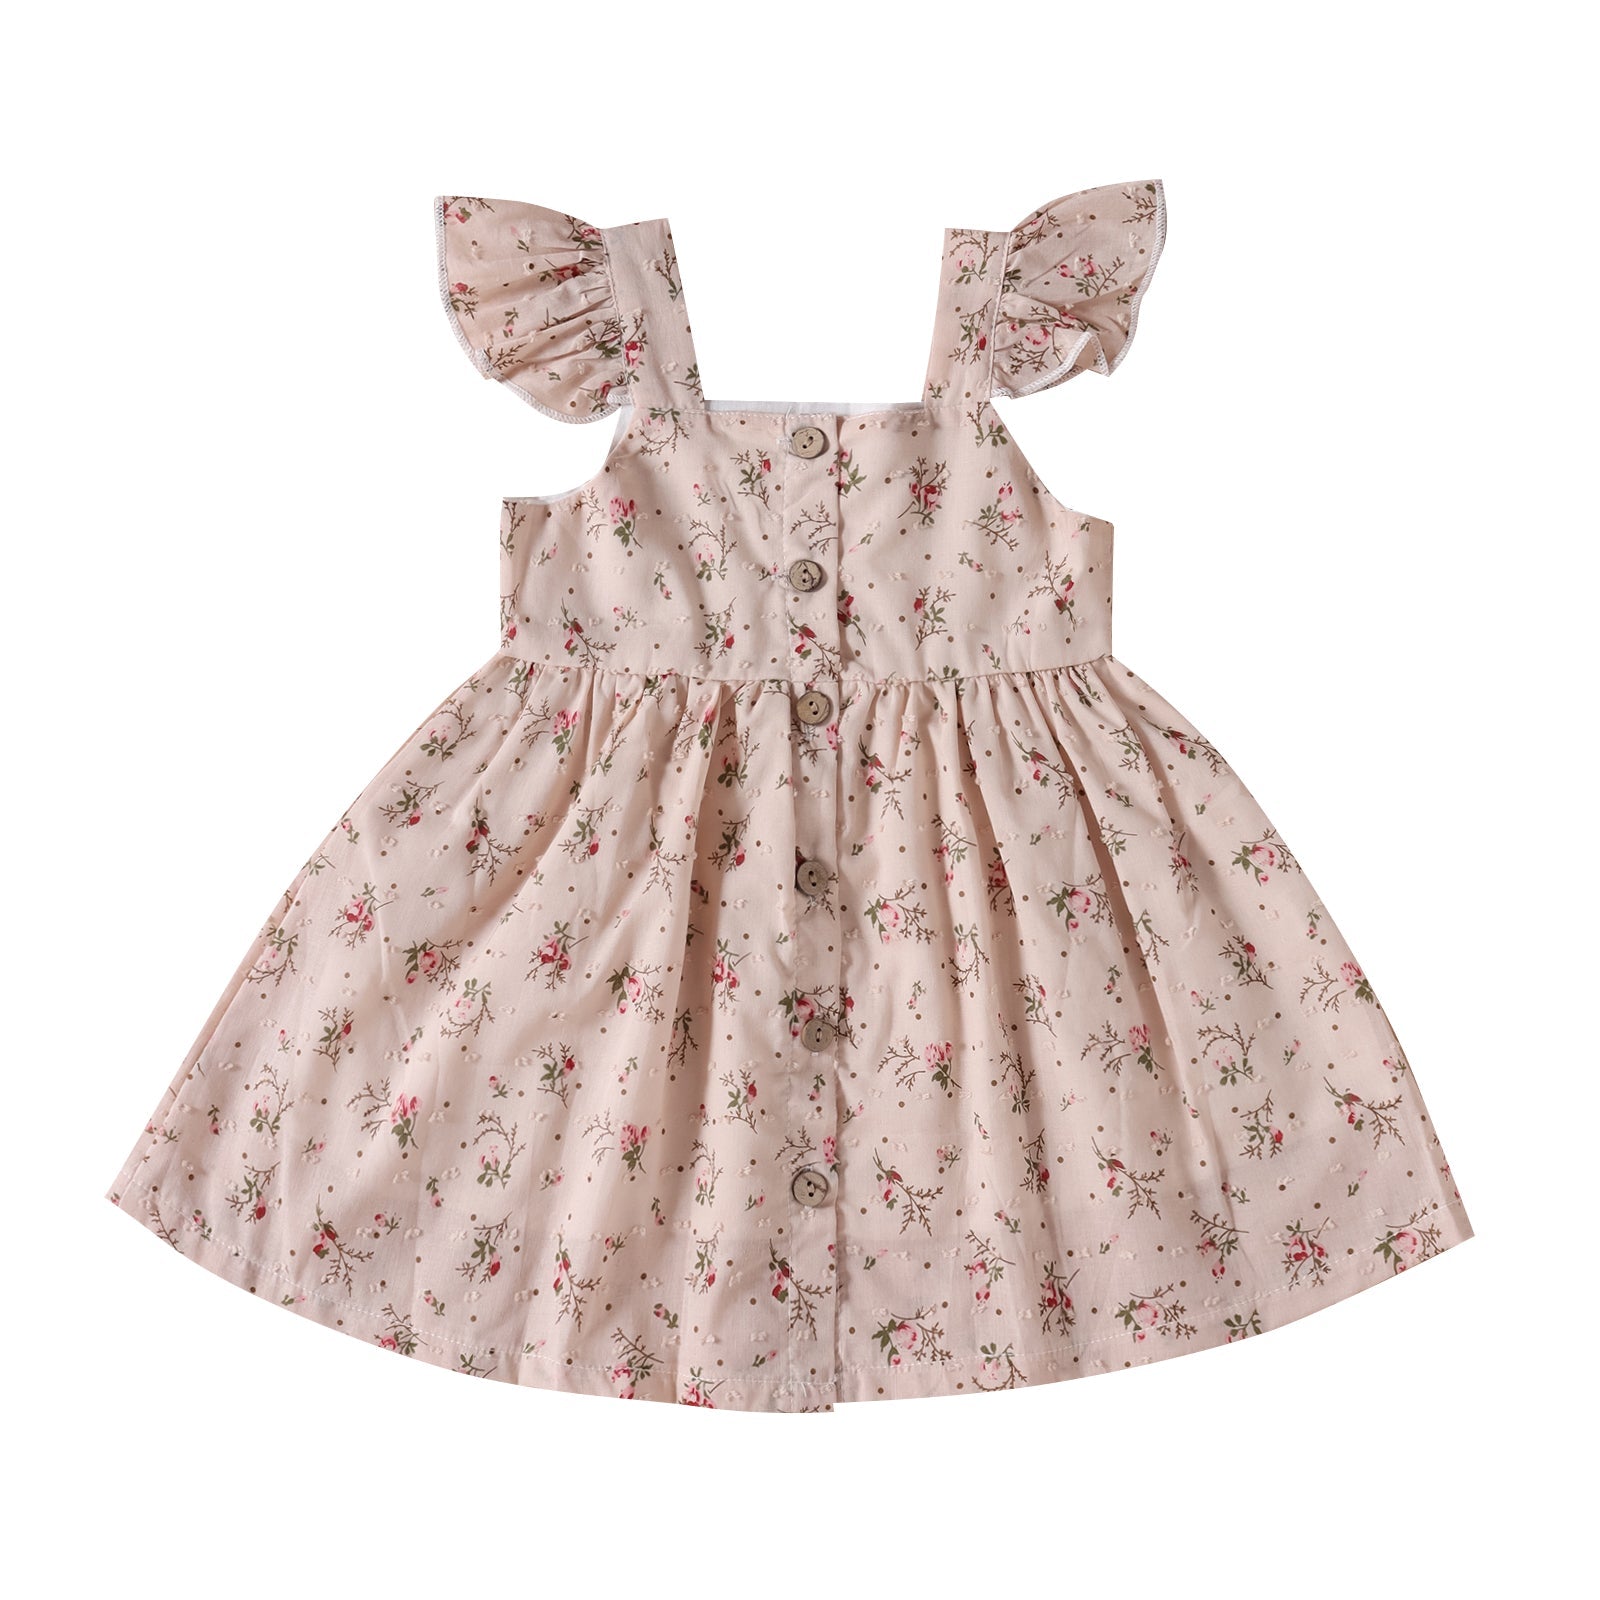 Toddler Flora Dress.